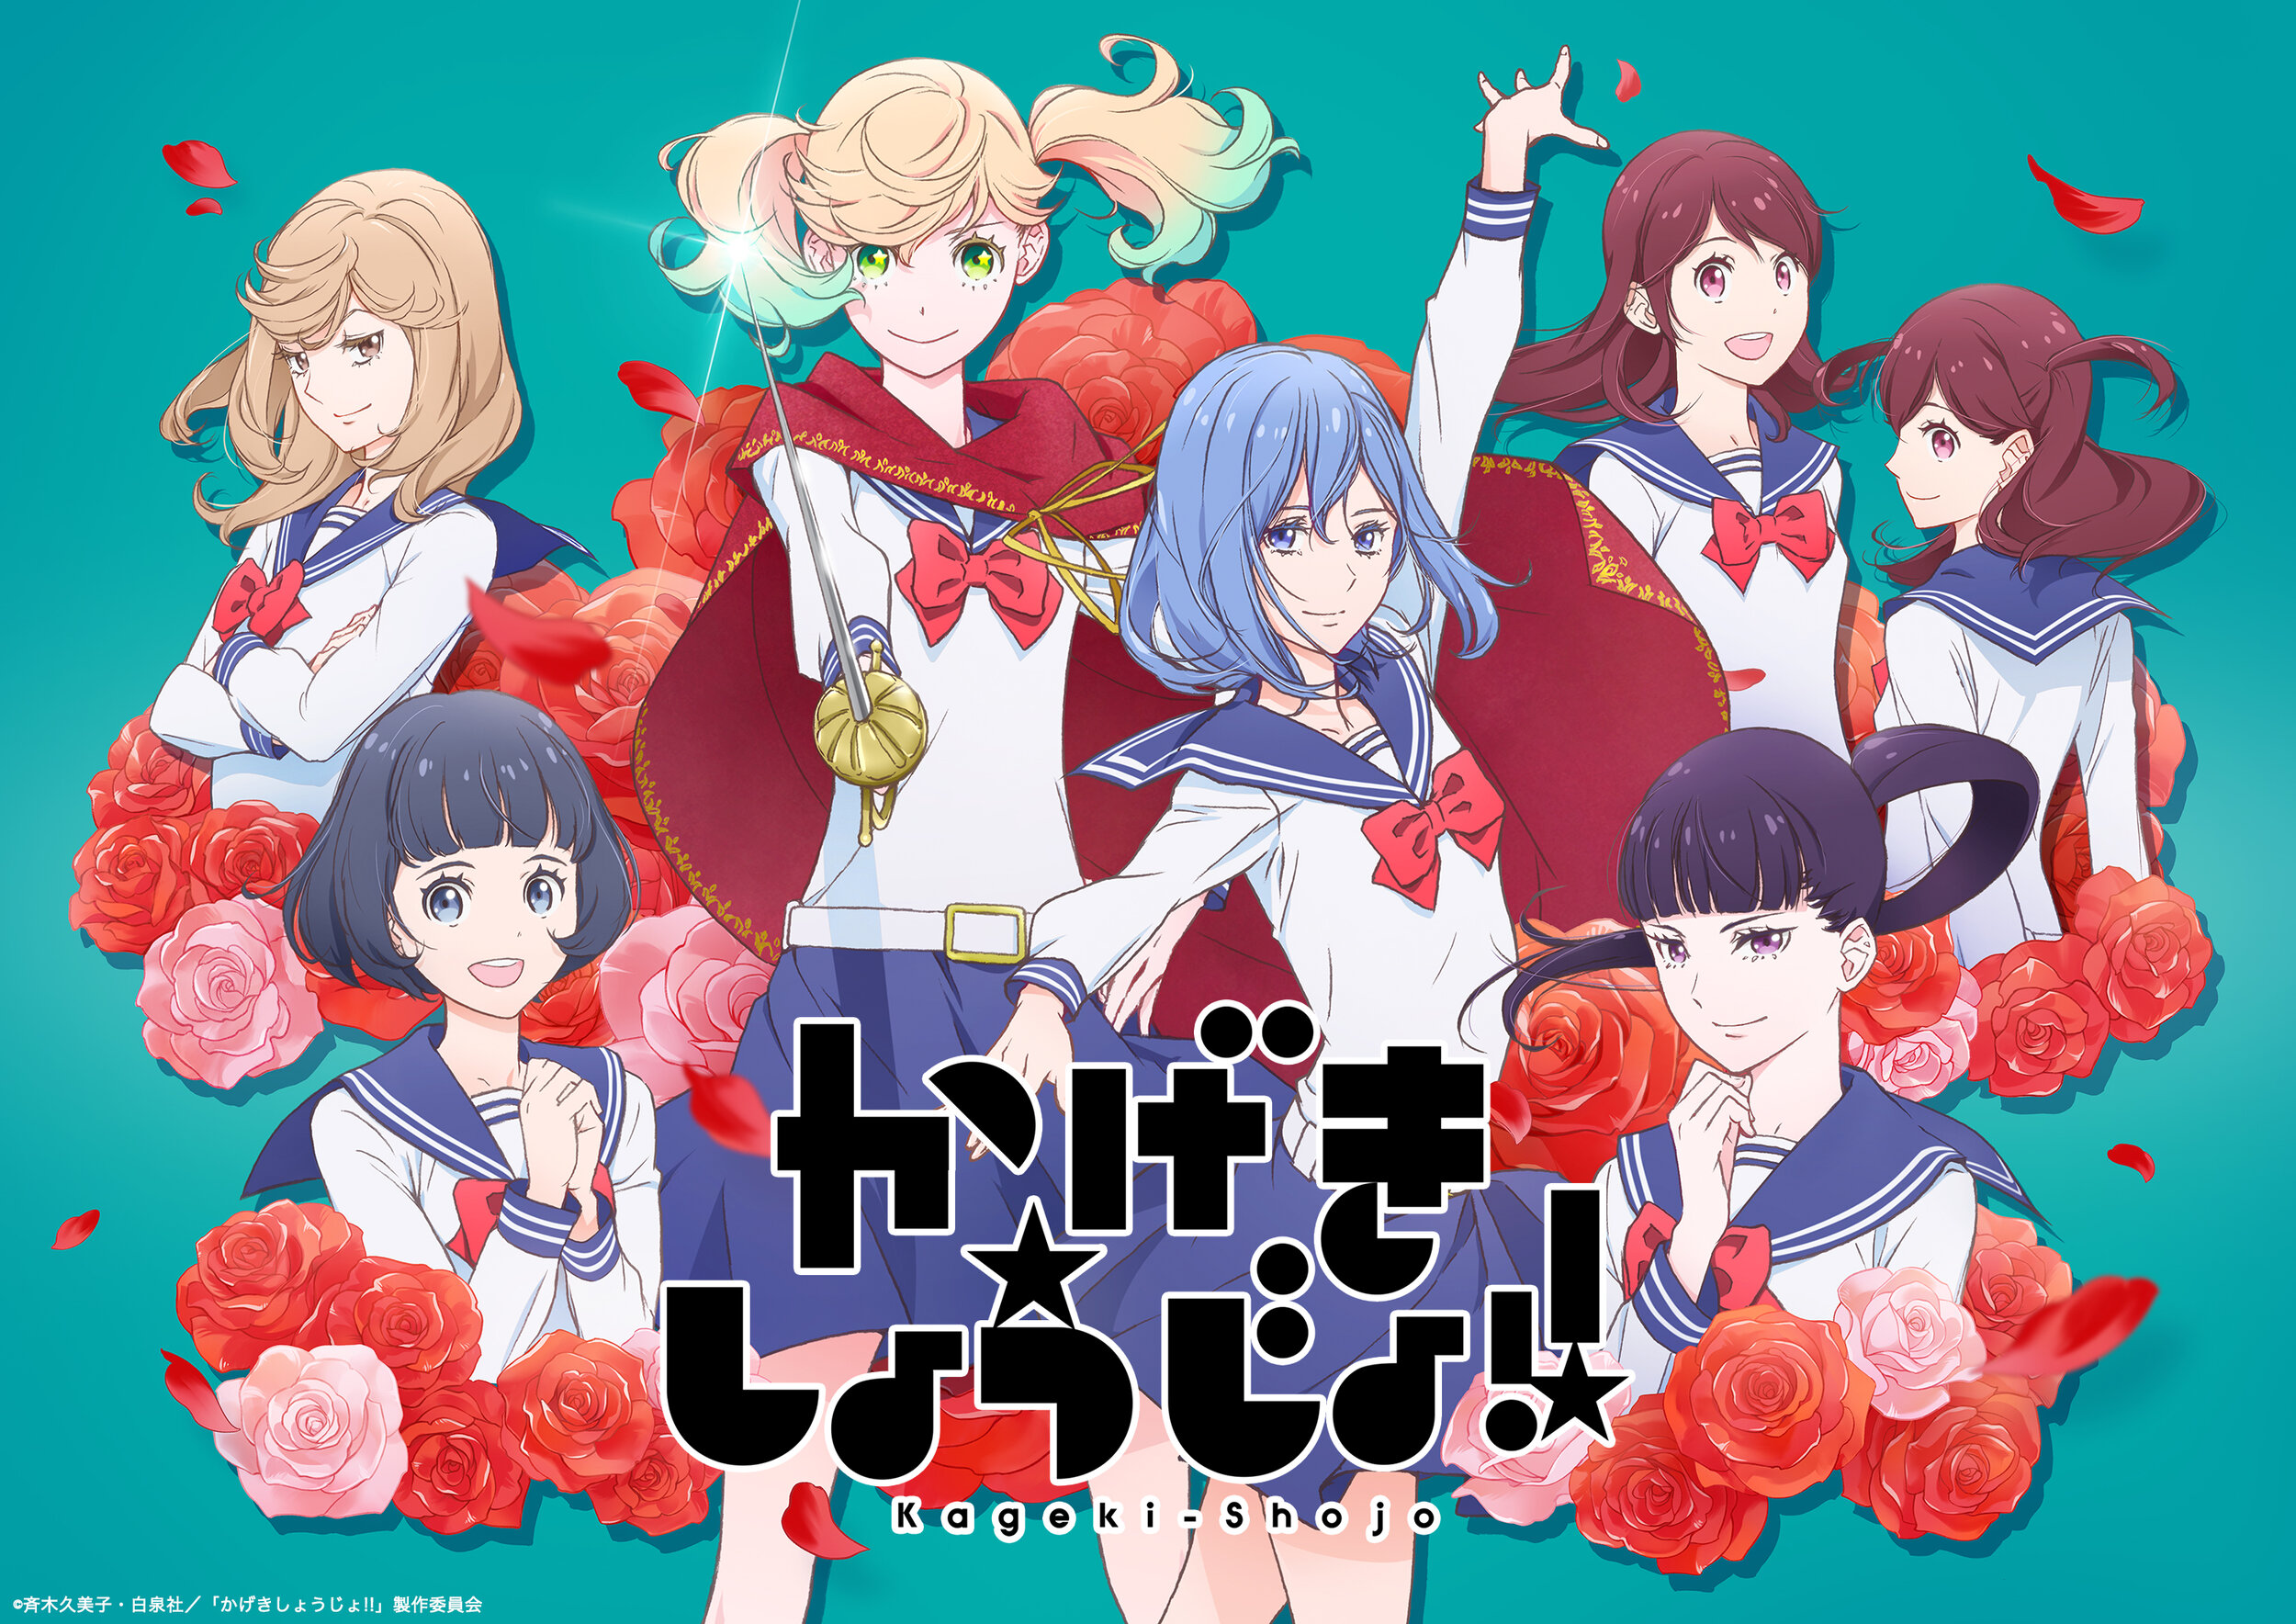 Episodes 11-12 - Kageki Shoujo!! - Anime News Network